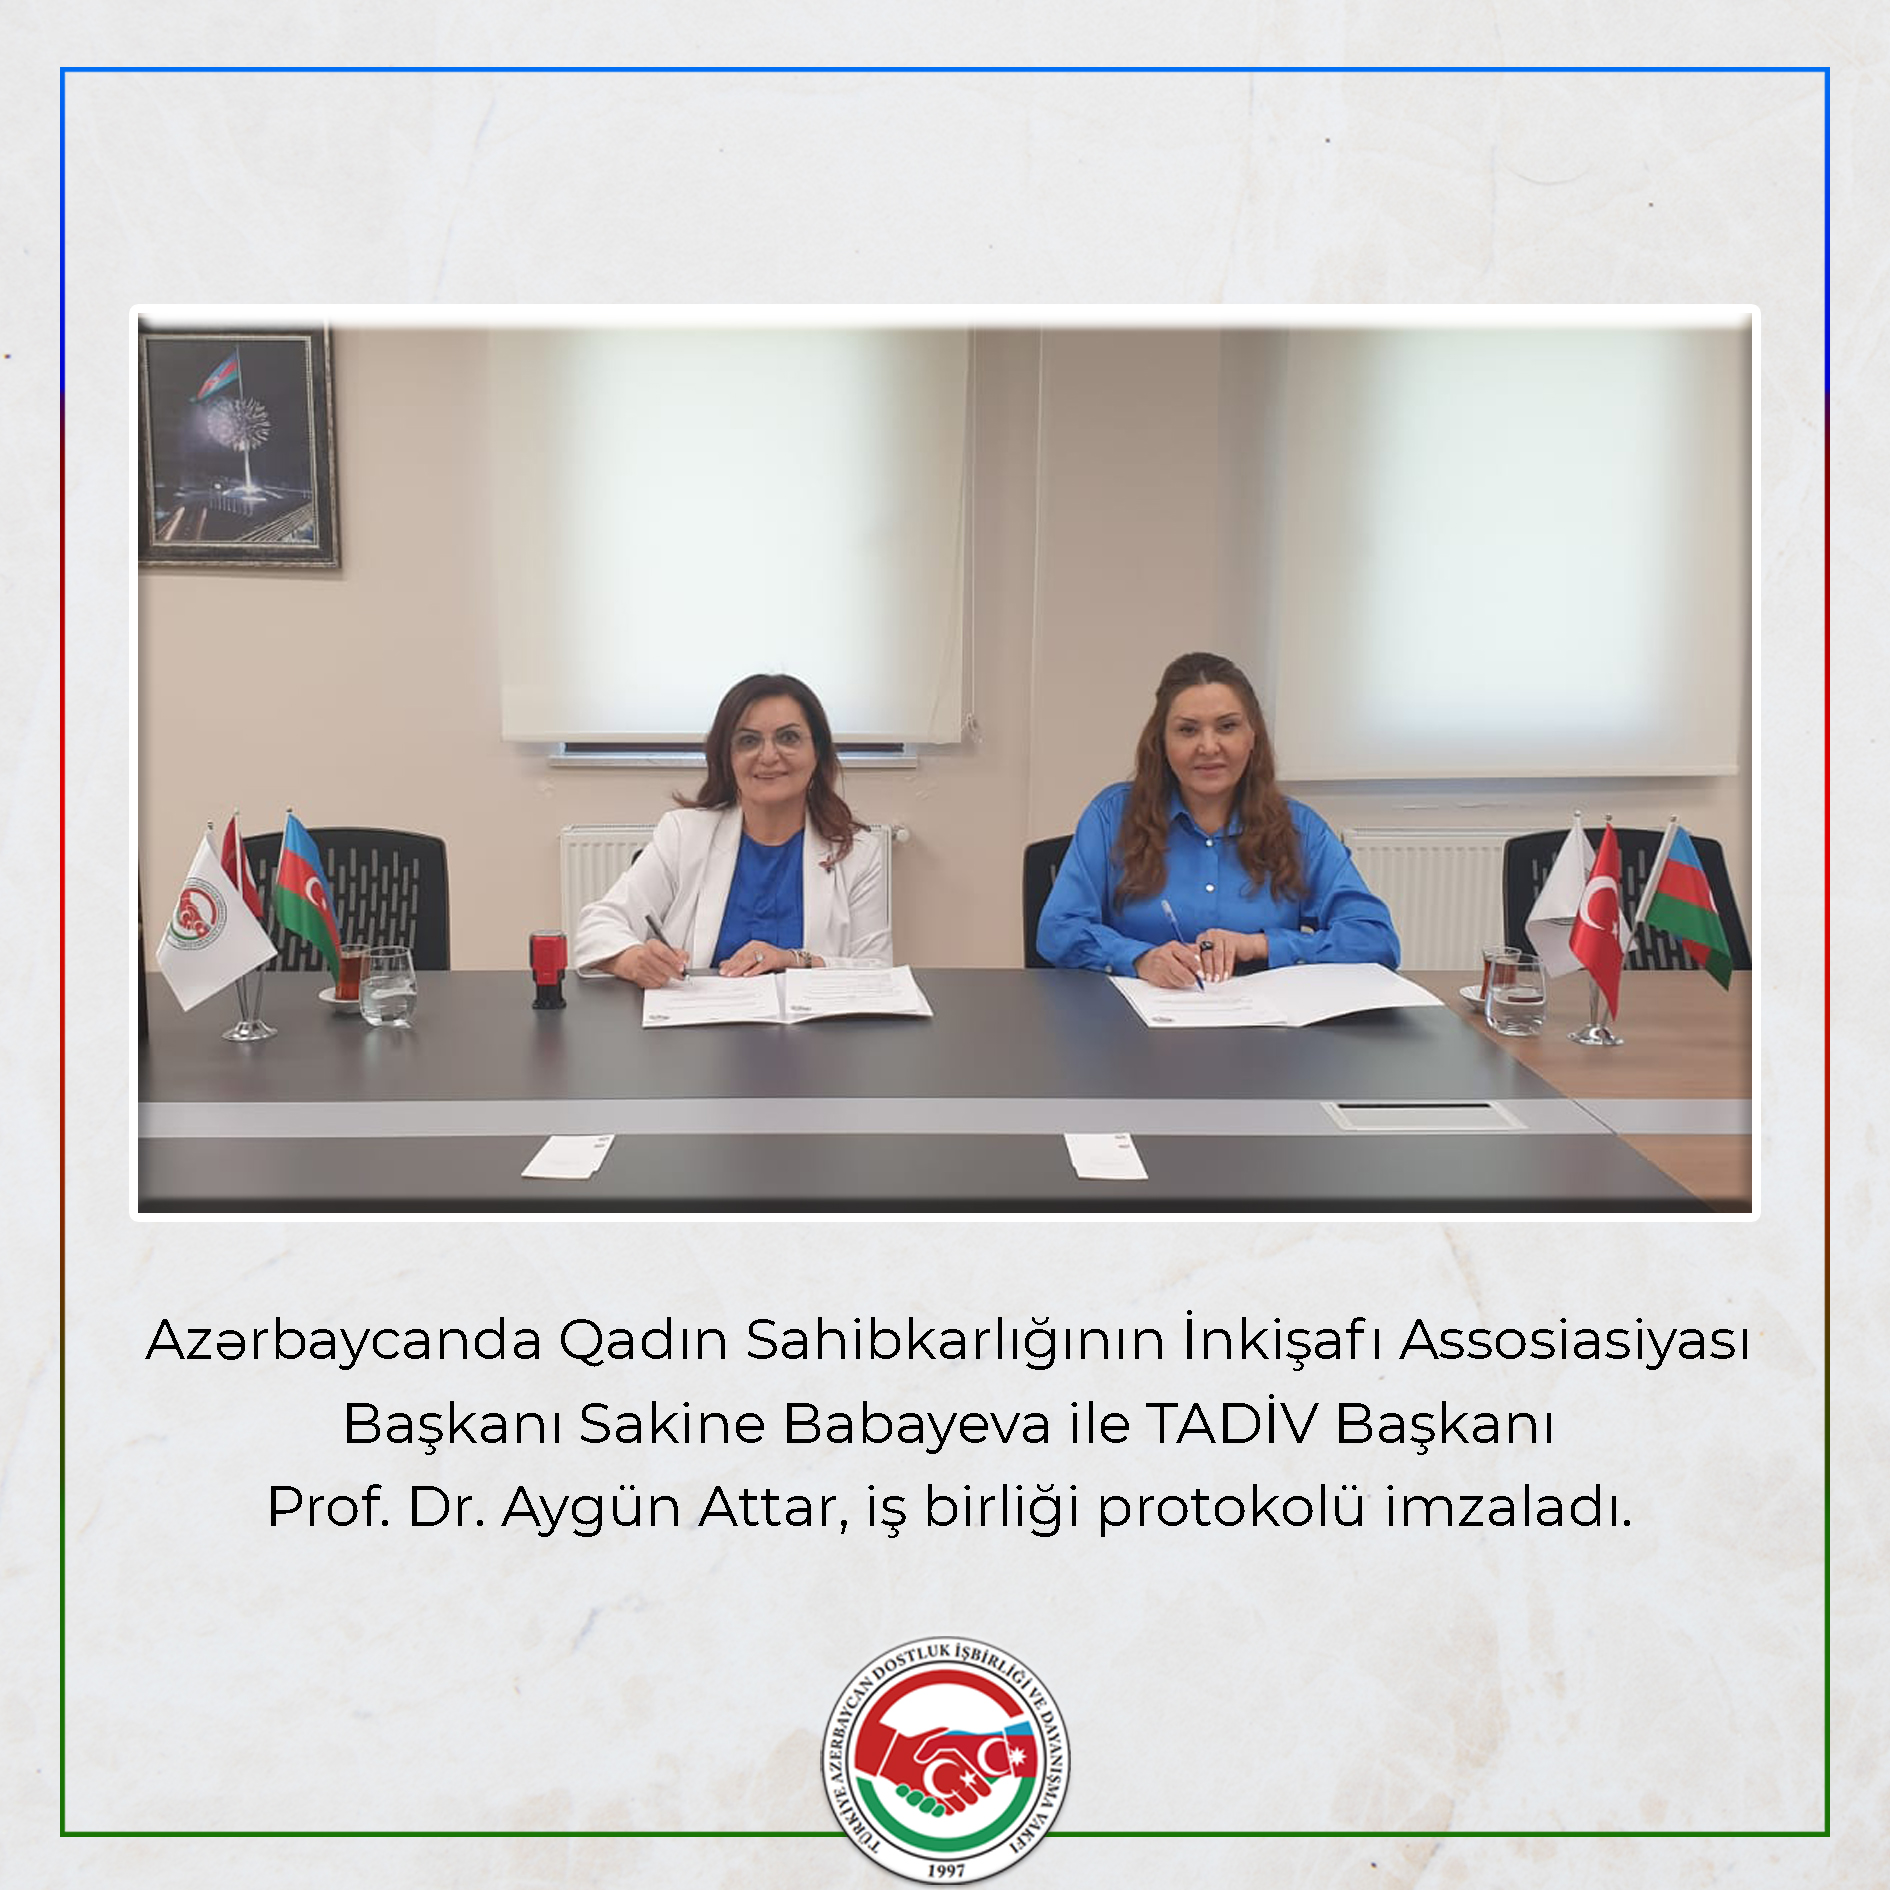 Azərbaycanda Qadın Sahibkarlığının İnkişafı Assosiasiyası ve TADİV arasında protokol imzalandı